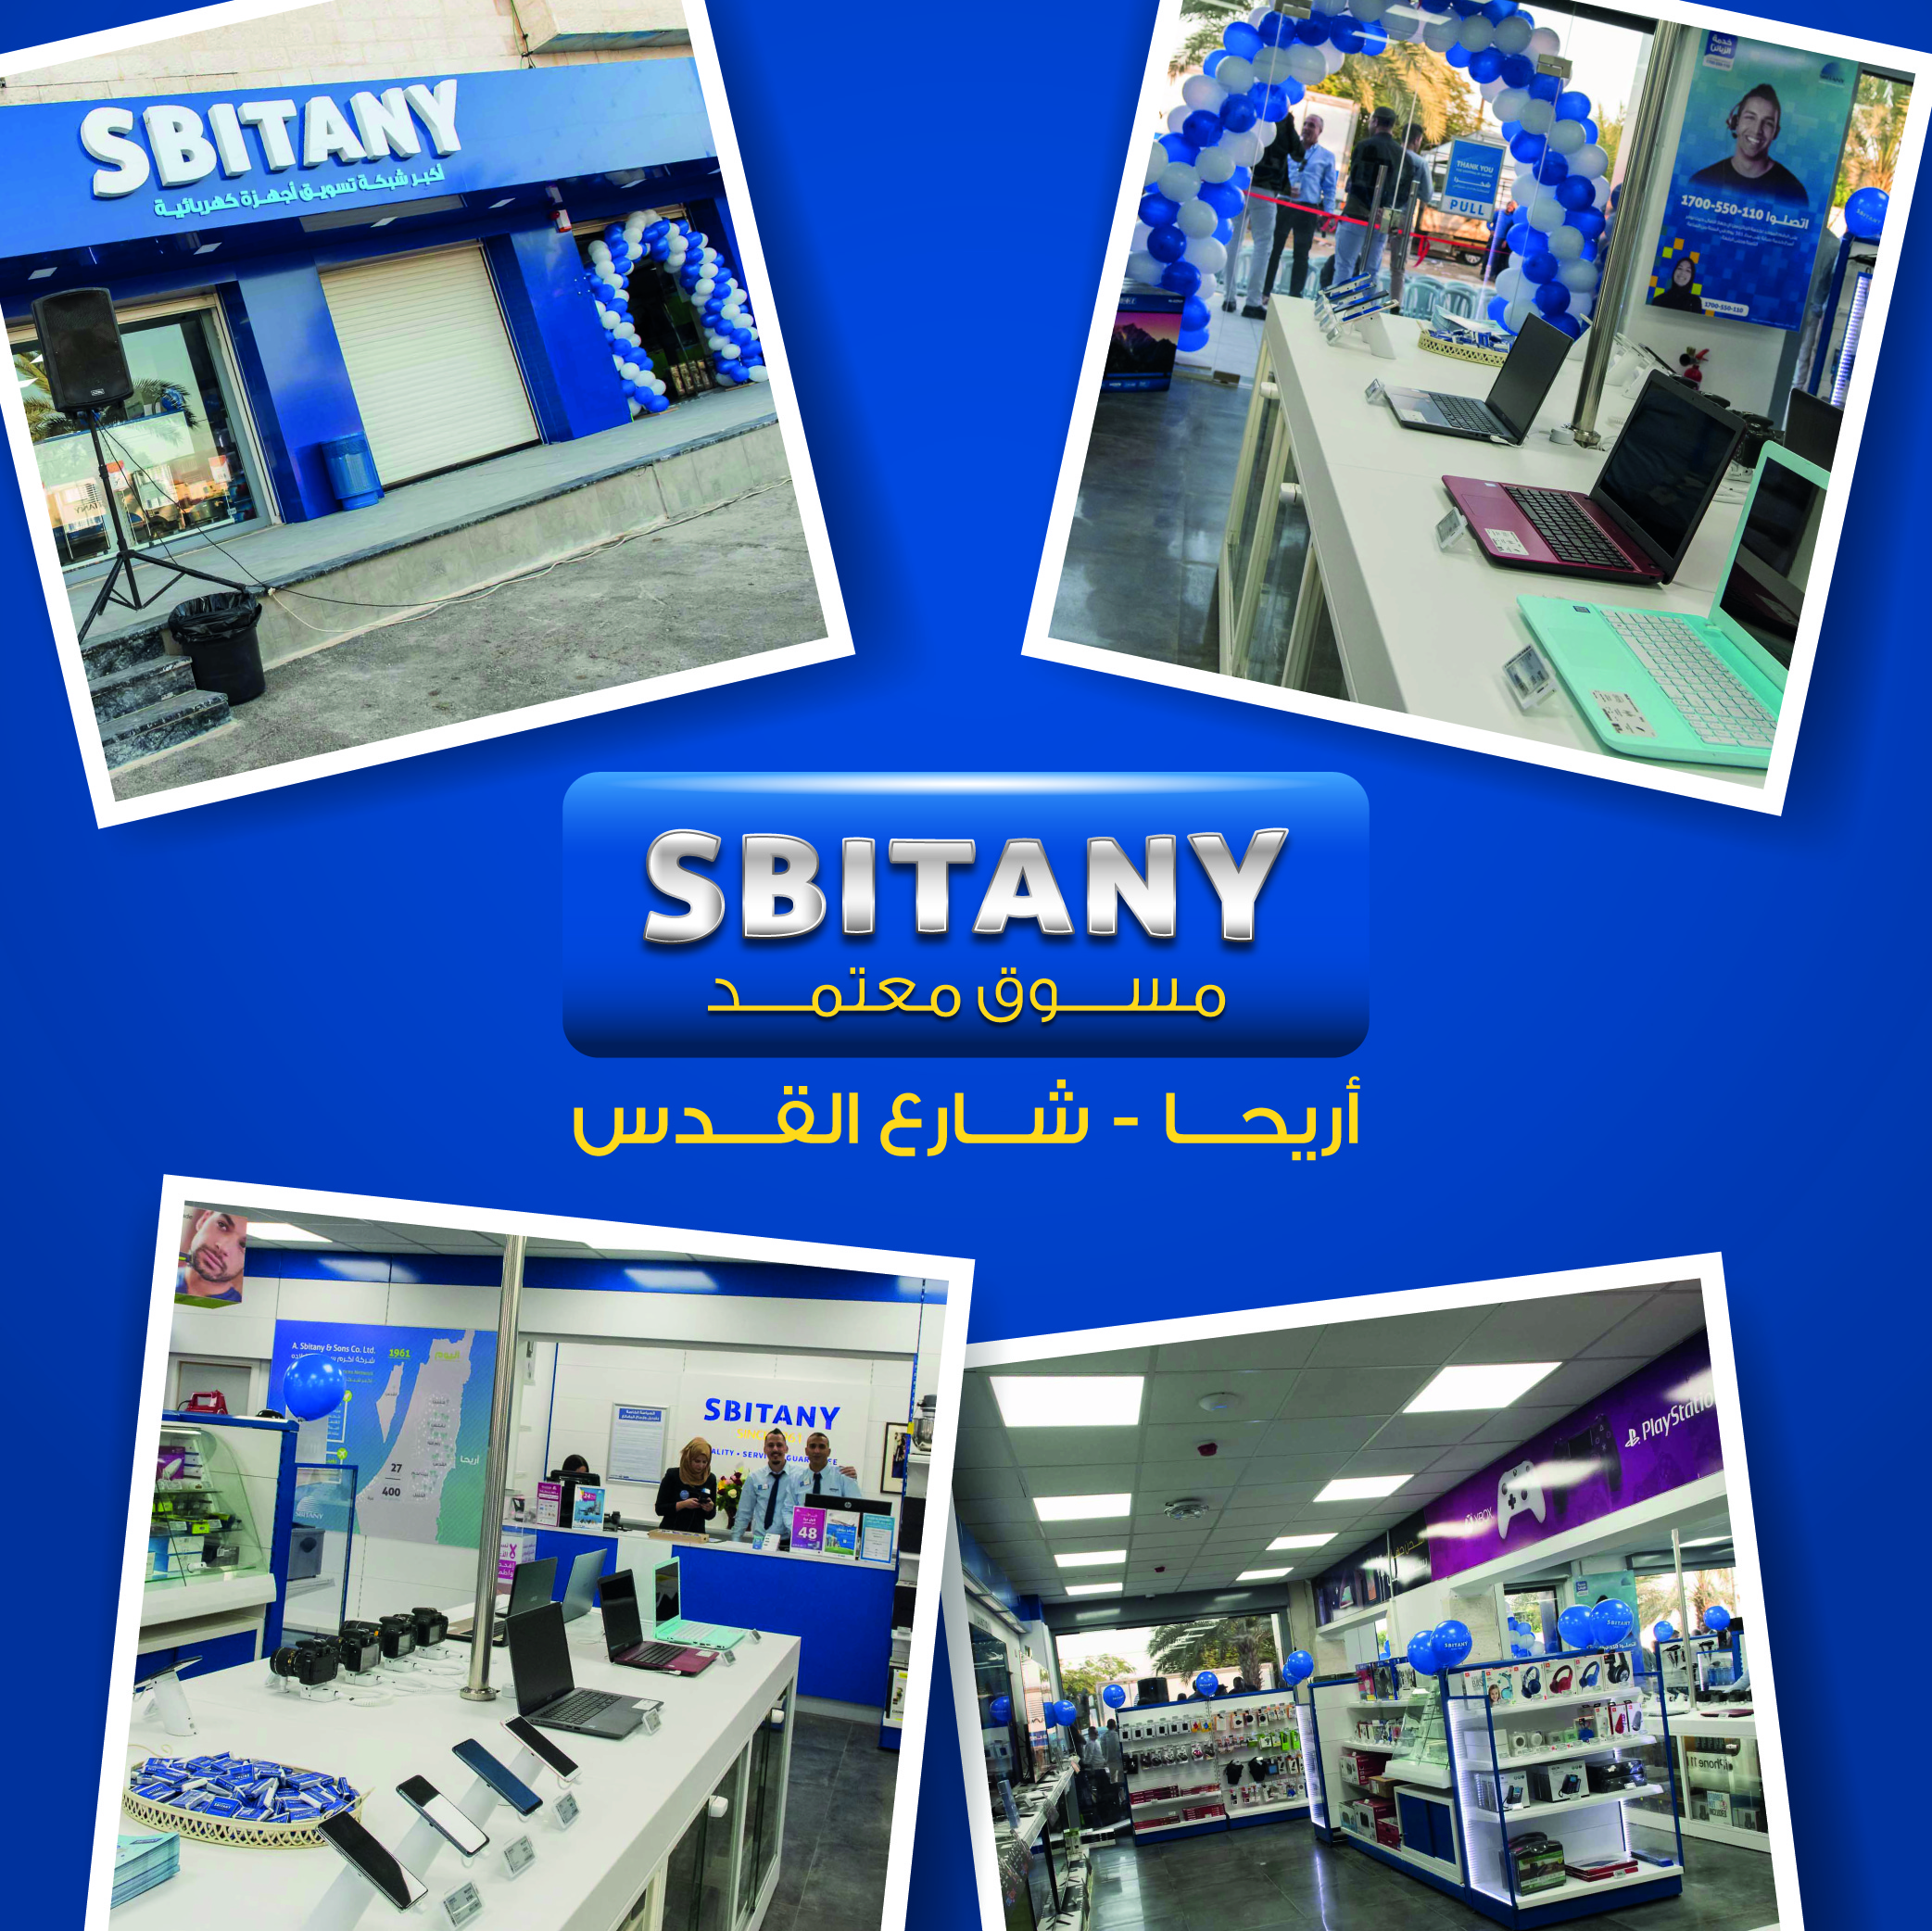 فرع شركة سبيتاني - اريحا, تميز و نجاح وتطور في الأجهزة والخدمات